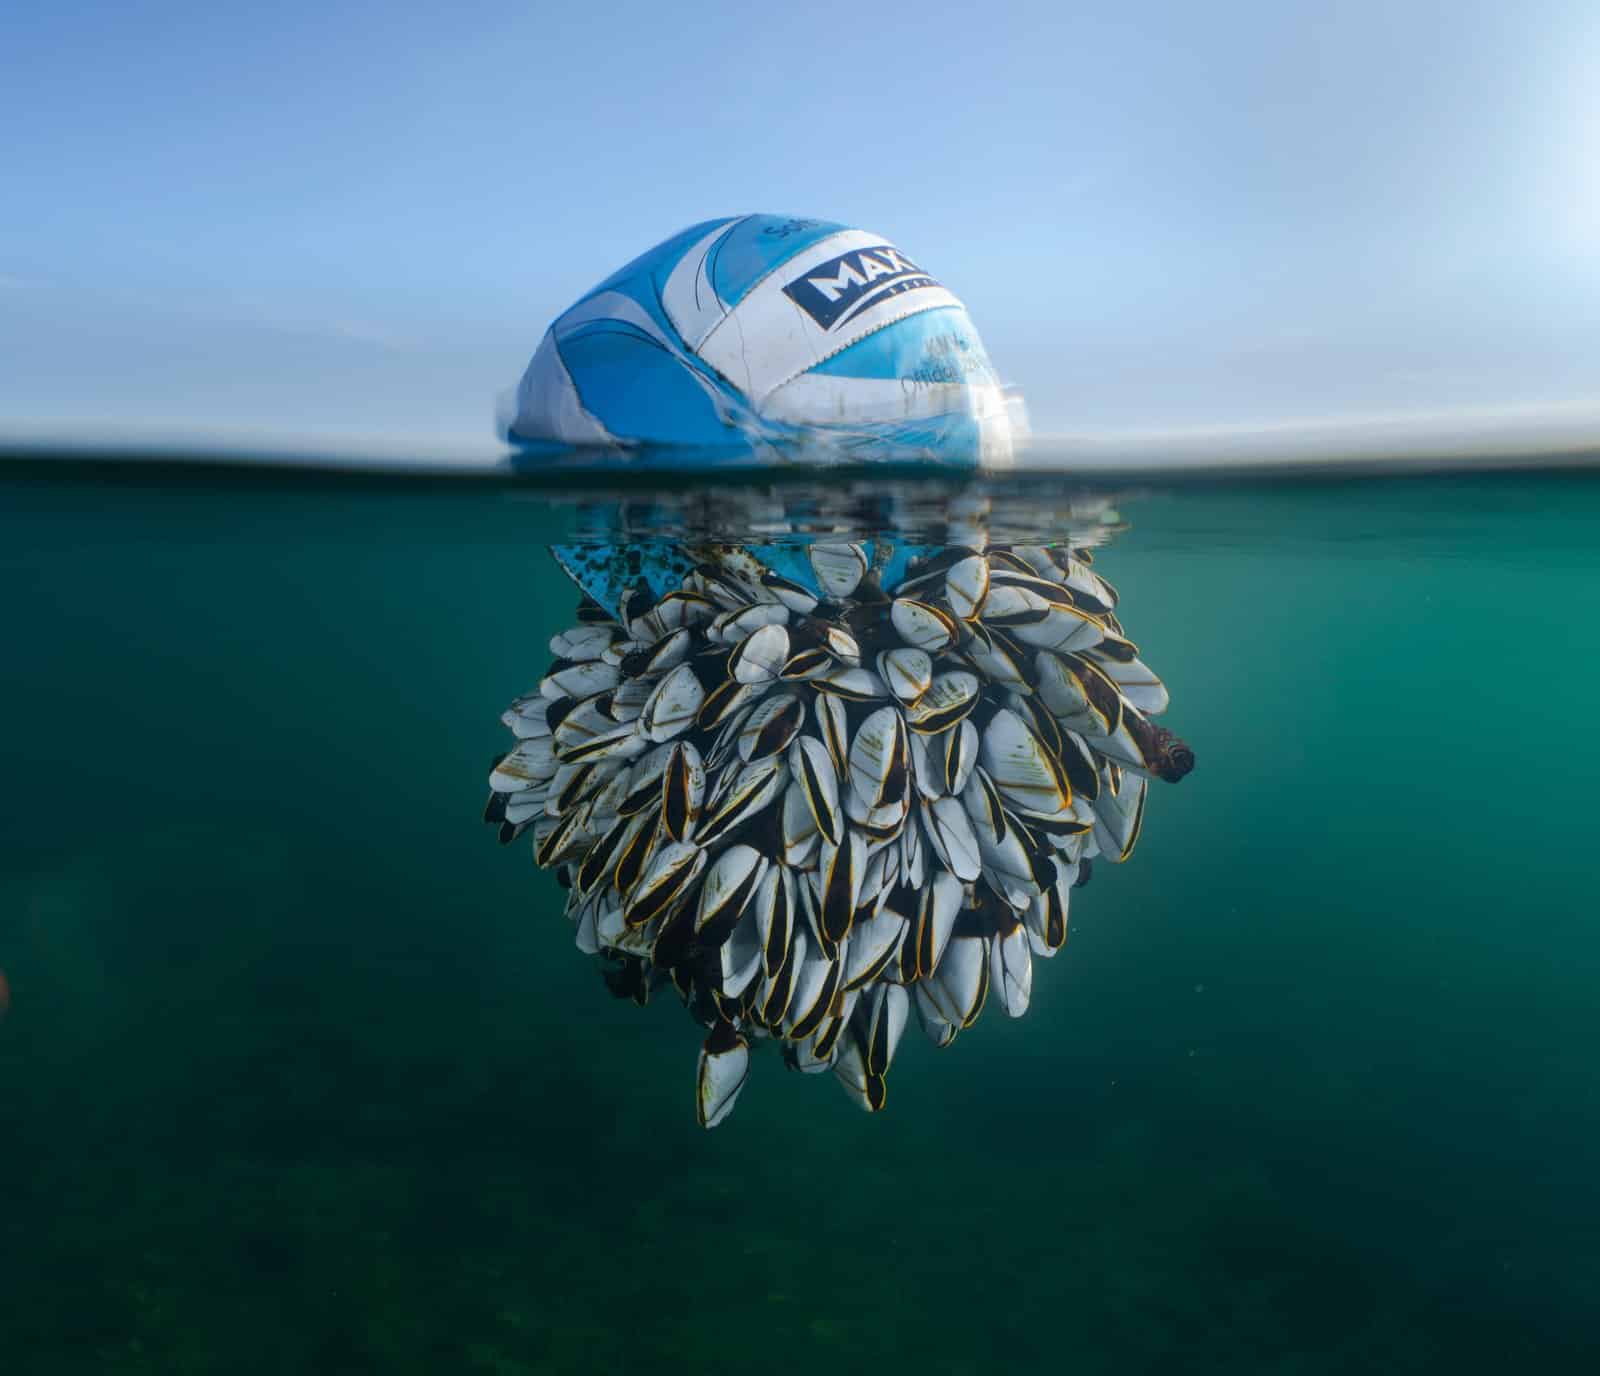 Снимок абсолютного победителя: «Бродяга океана» — фотография футбольного мяча, покрытого ракушками ниже ватерлинии / © Ryan Stalker